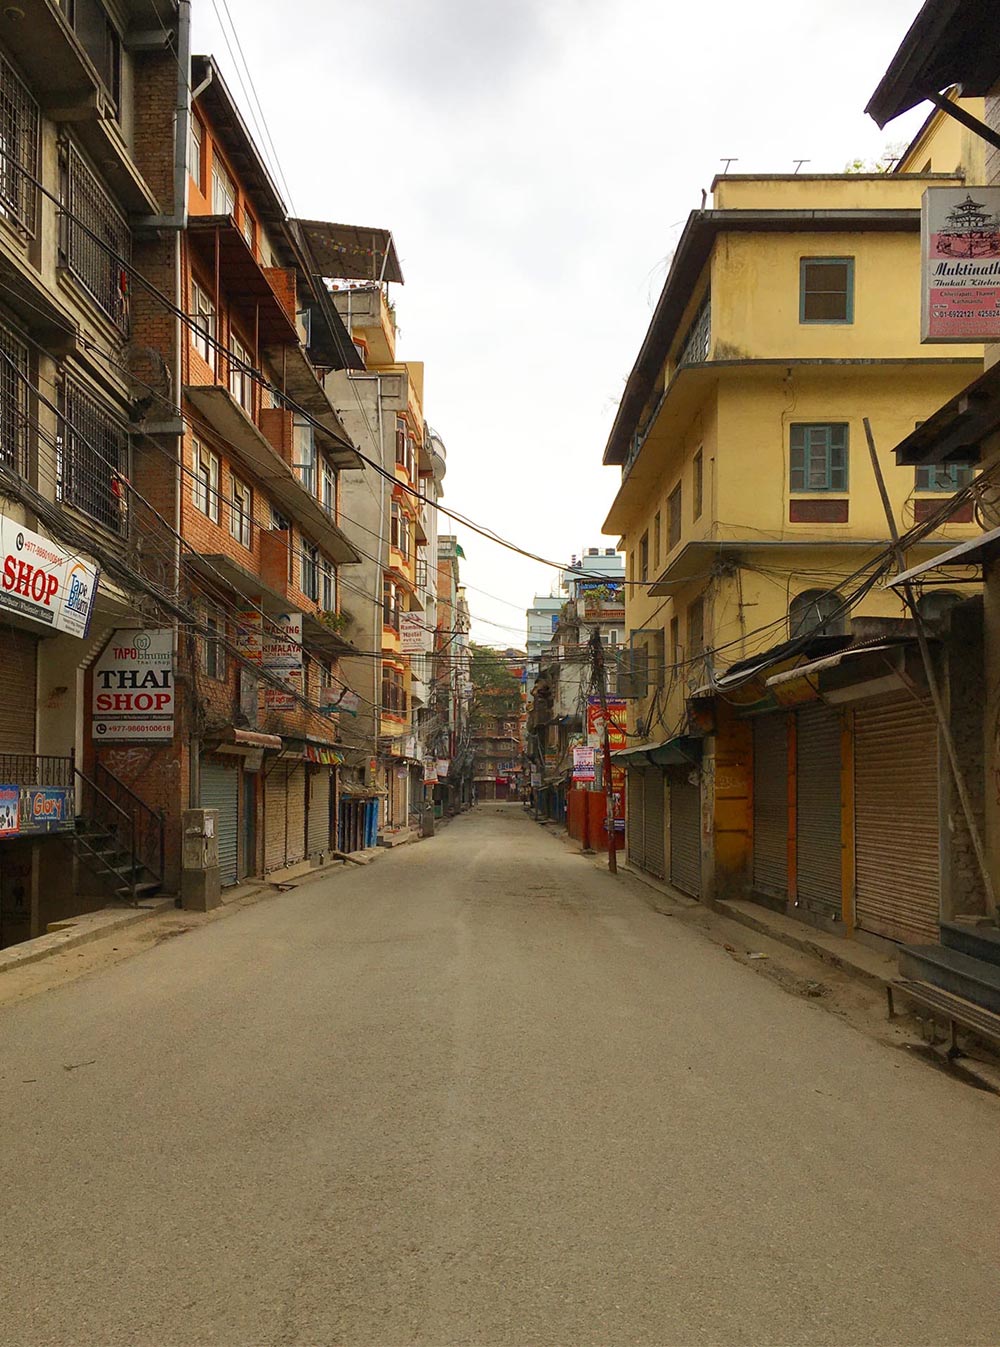 Опустевший Катманду, фотографии одной из застрявших туристок — Юлии Широченко